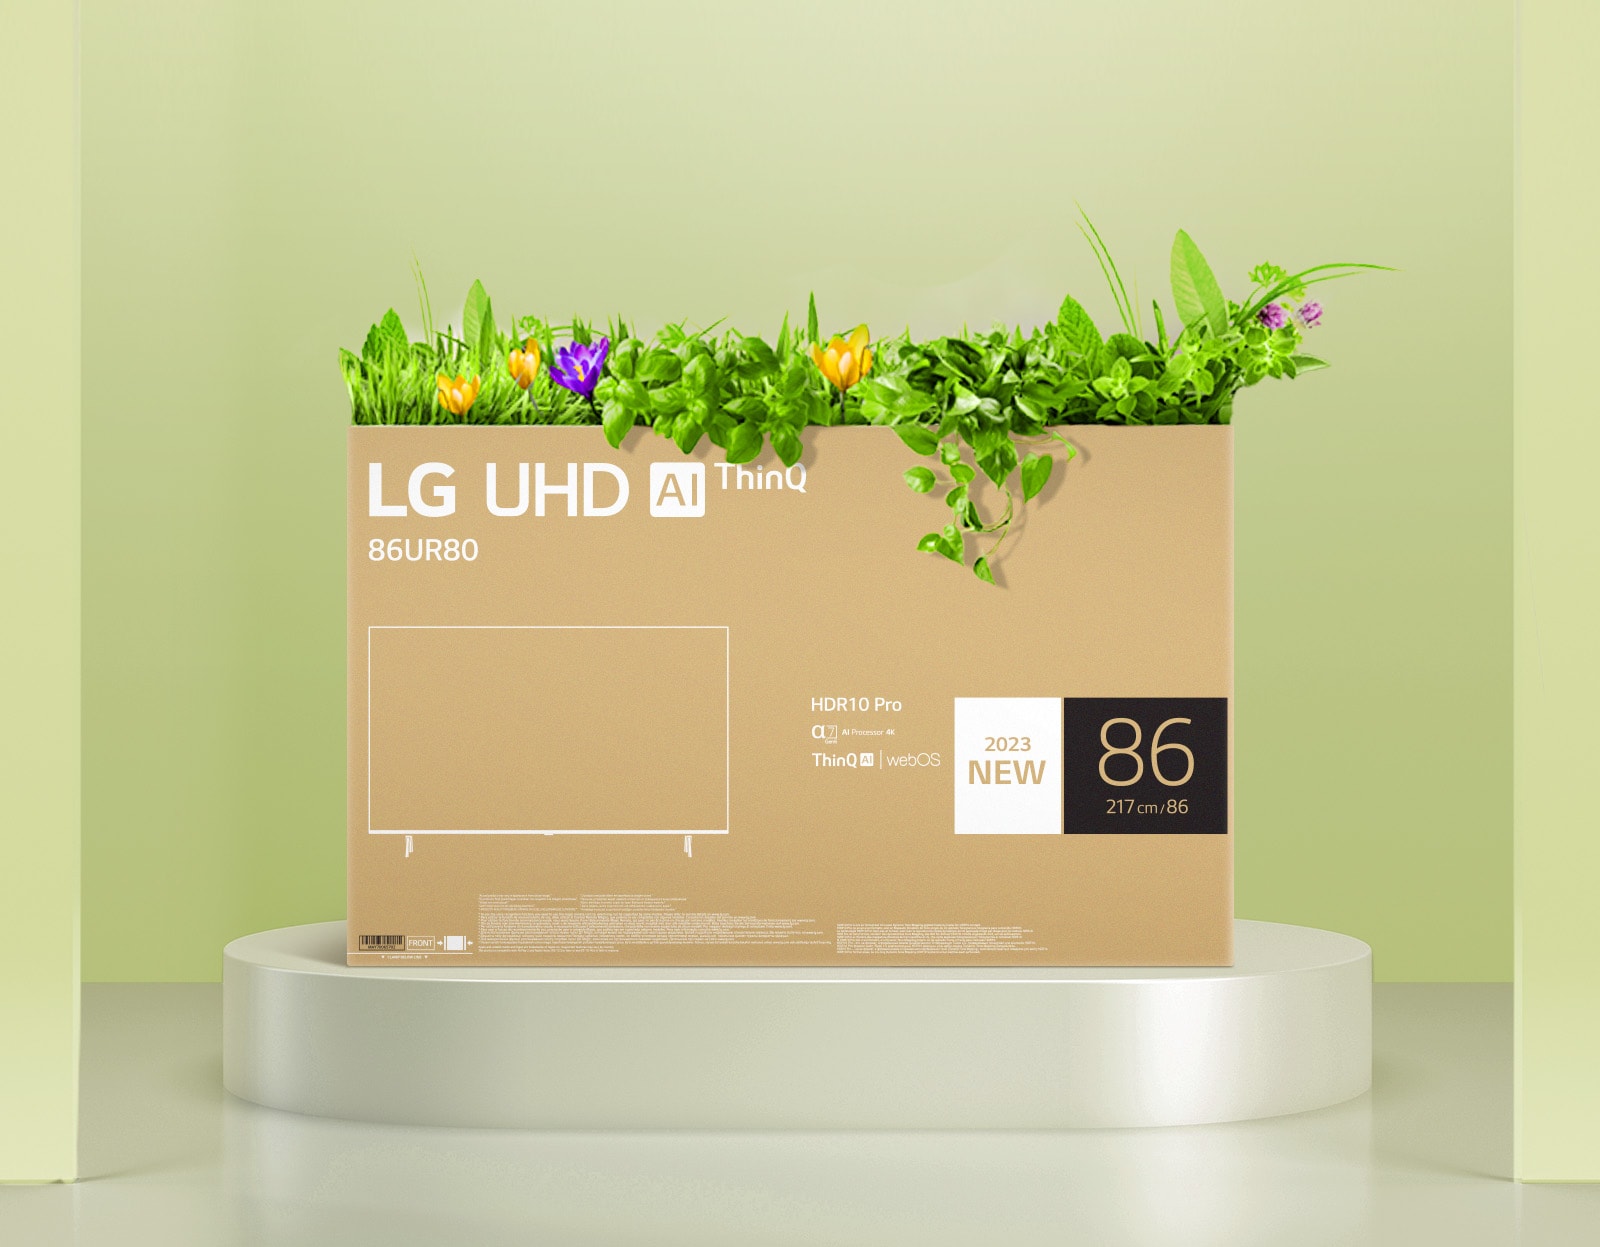 Empaque de cartón ecológico LG OLED representado alrededor de árboles y montañas.